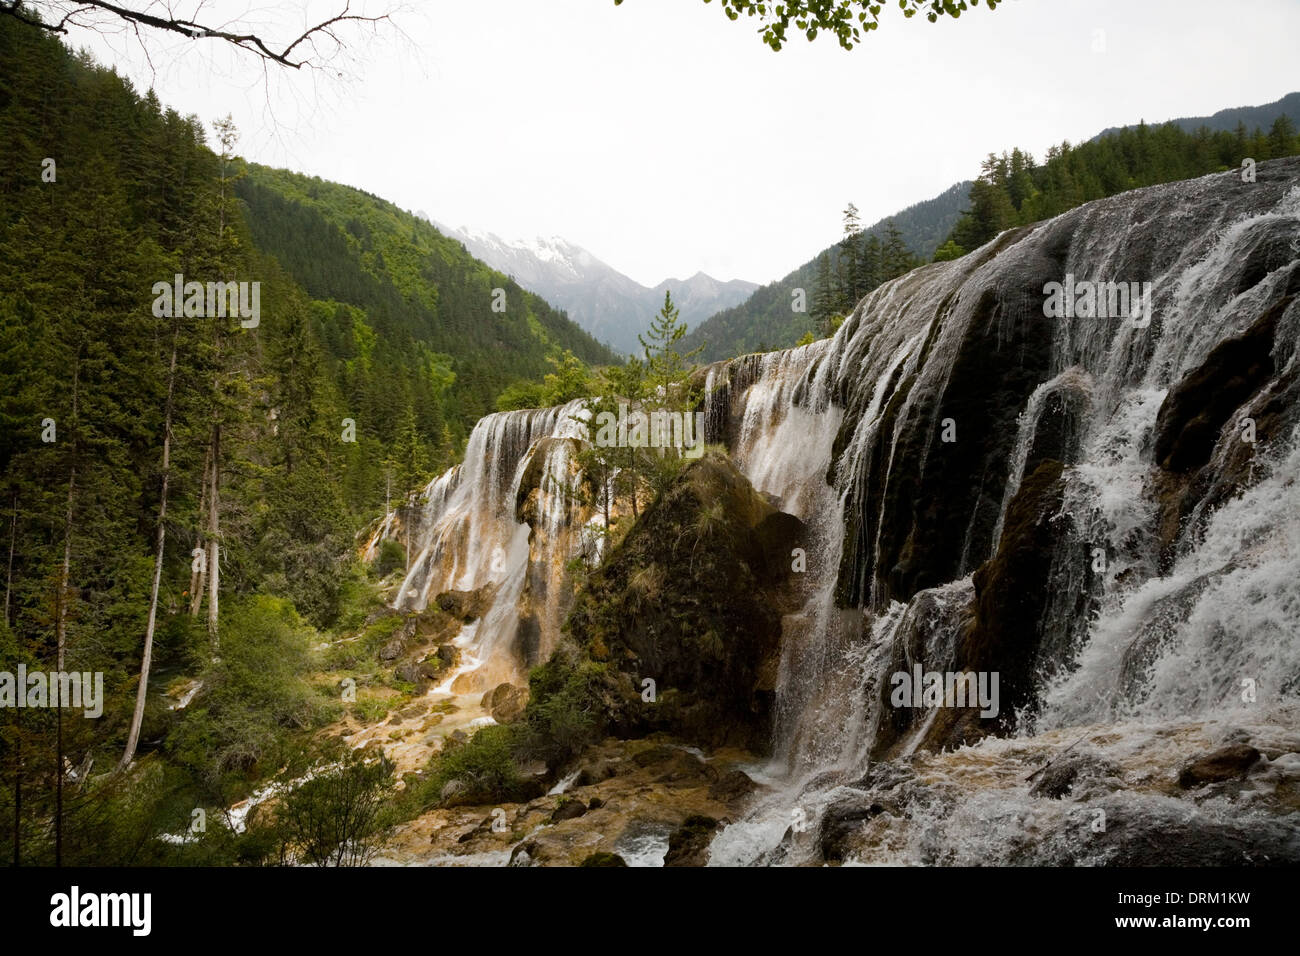 Belle chute d'eau / chutes d'eau / chute d'eau dans le parc naturel chinois de la vallée de Jiuzhaigou, qui est dans le Sichuan, Chine / RPC.(67) Banque D'Images